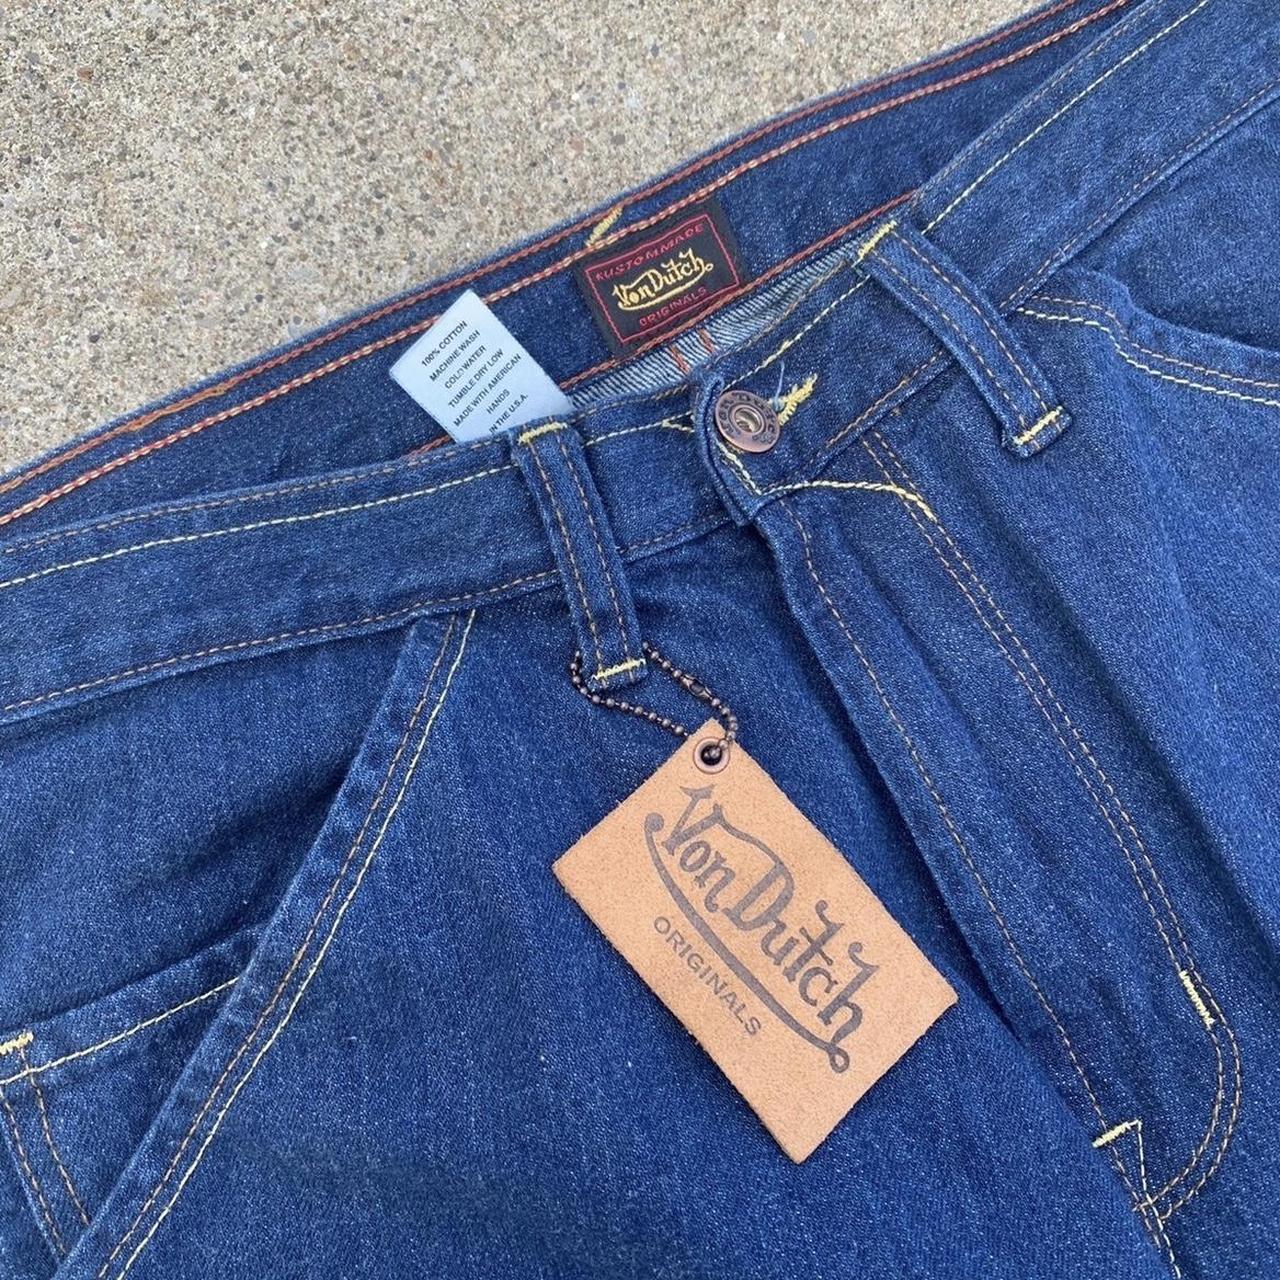 Von Dutch double knee jeans tagged a 32 inseam 34... - Depop